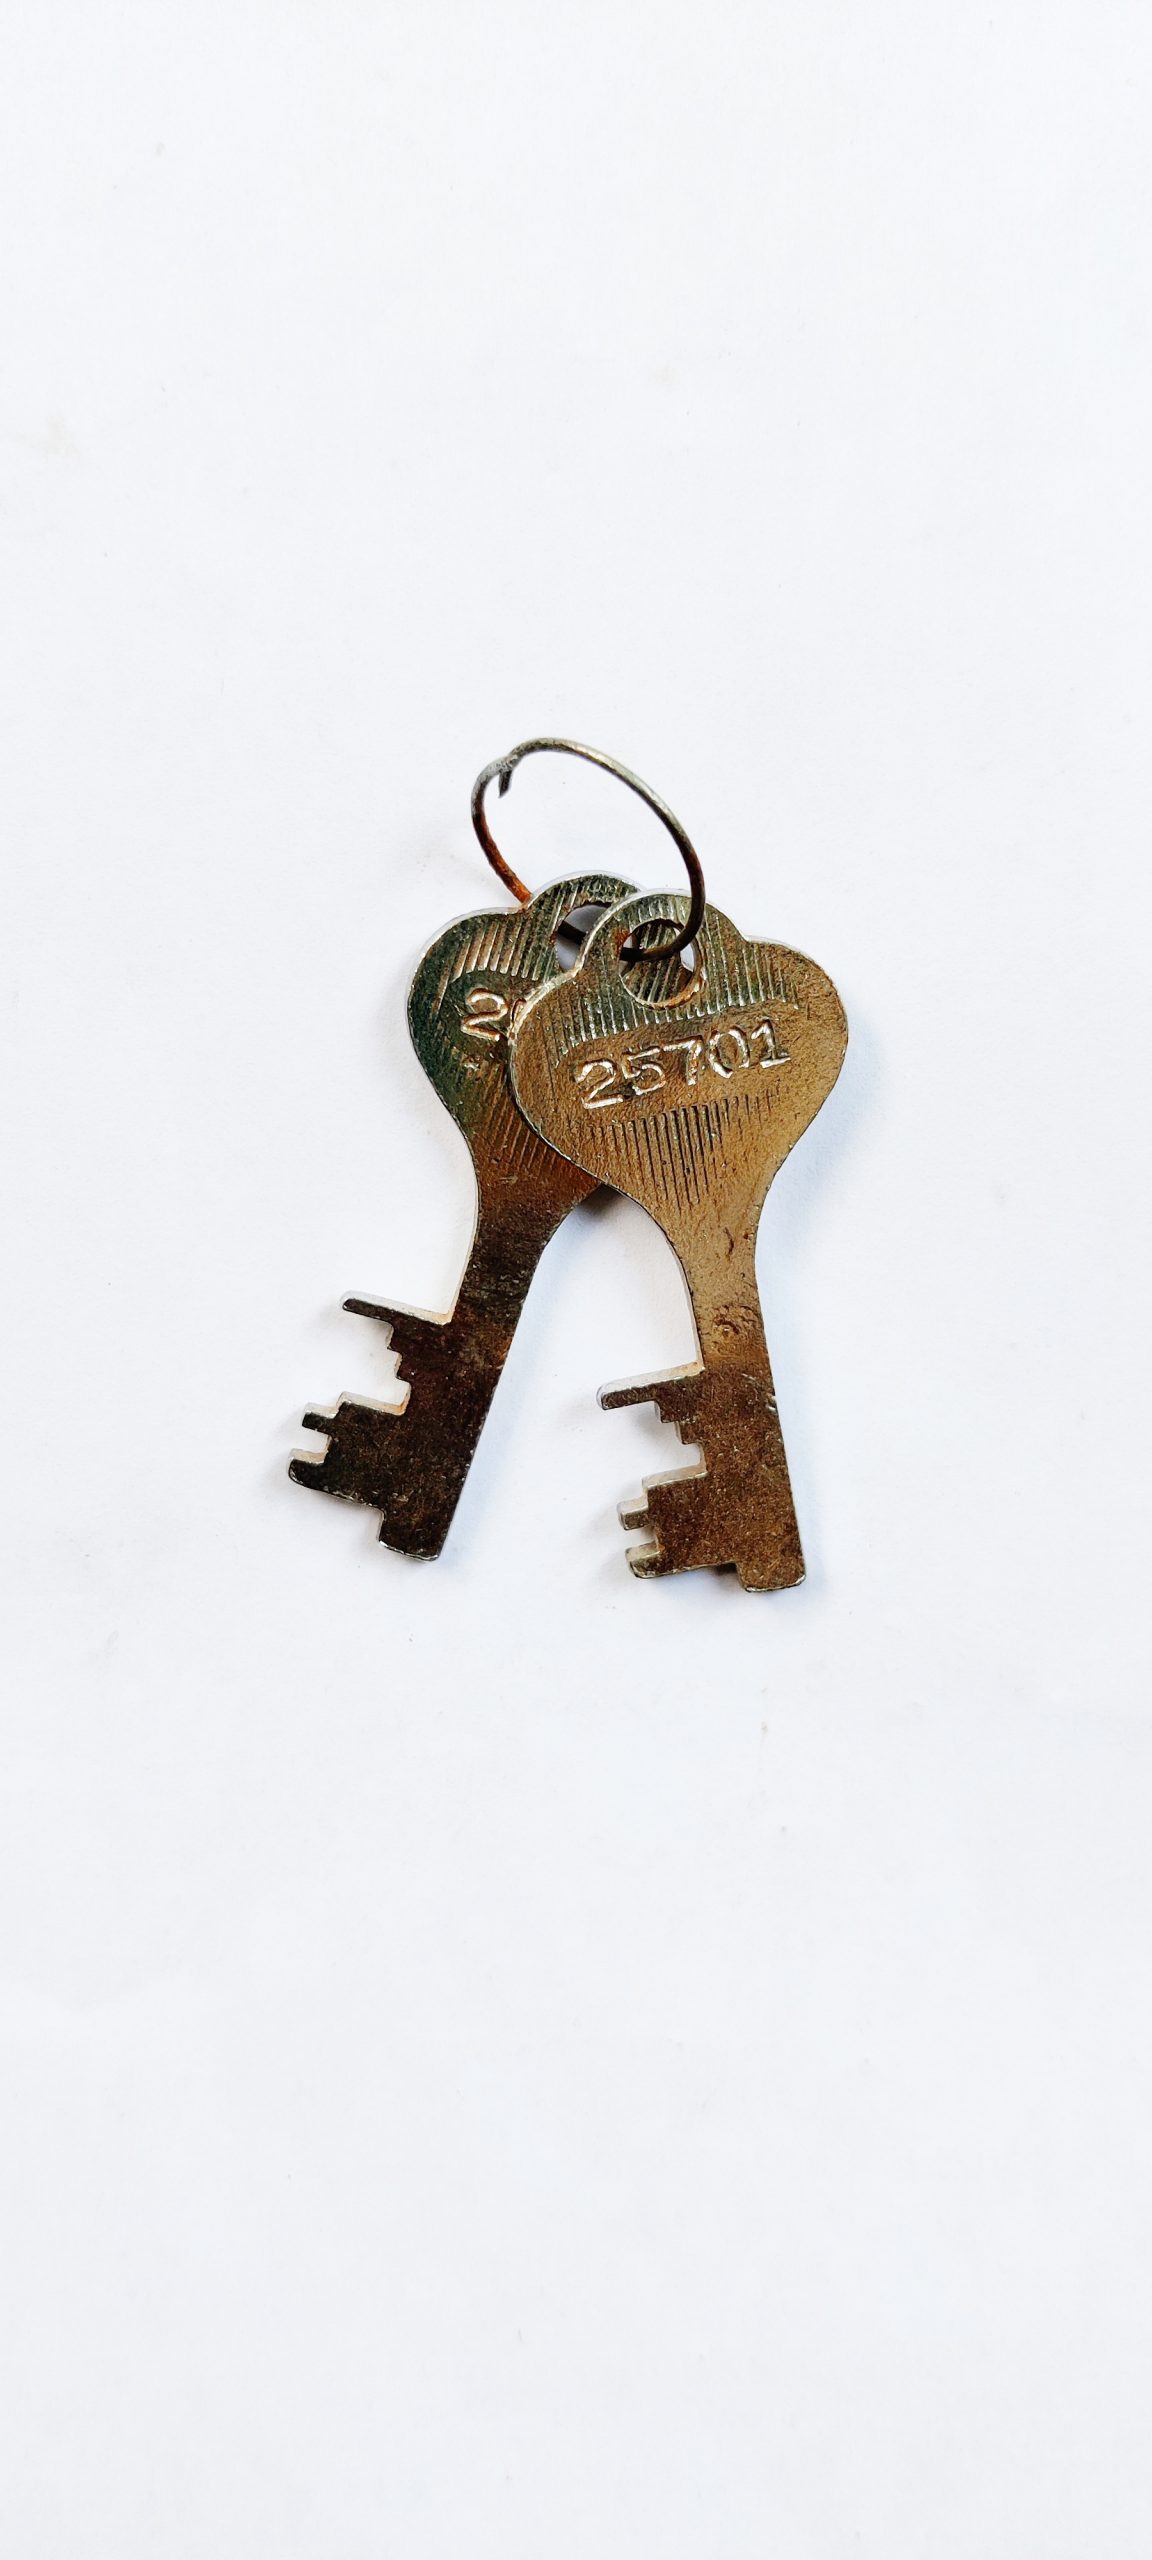 openaudible key